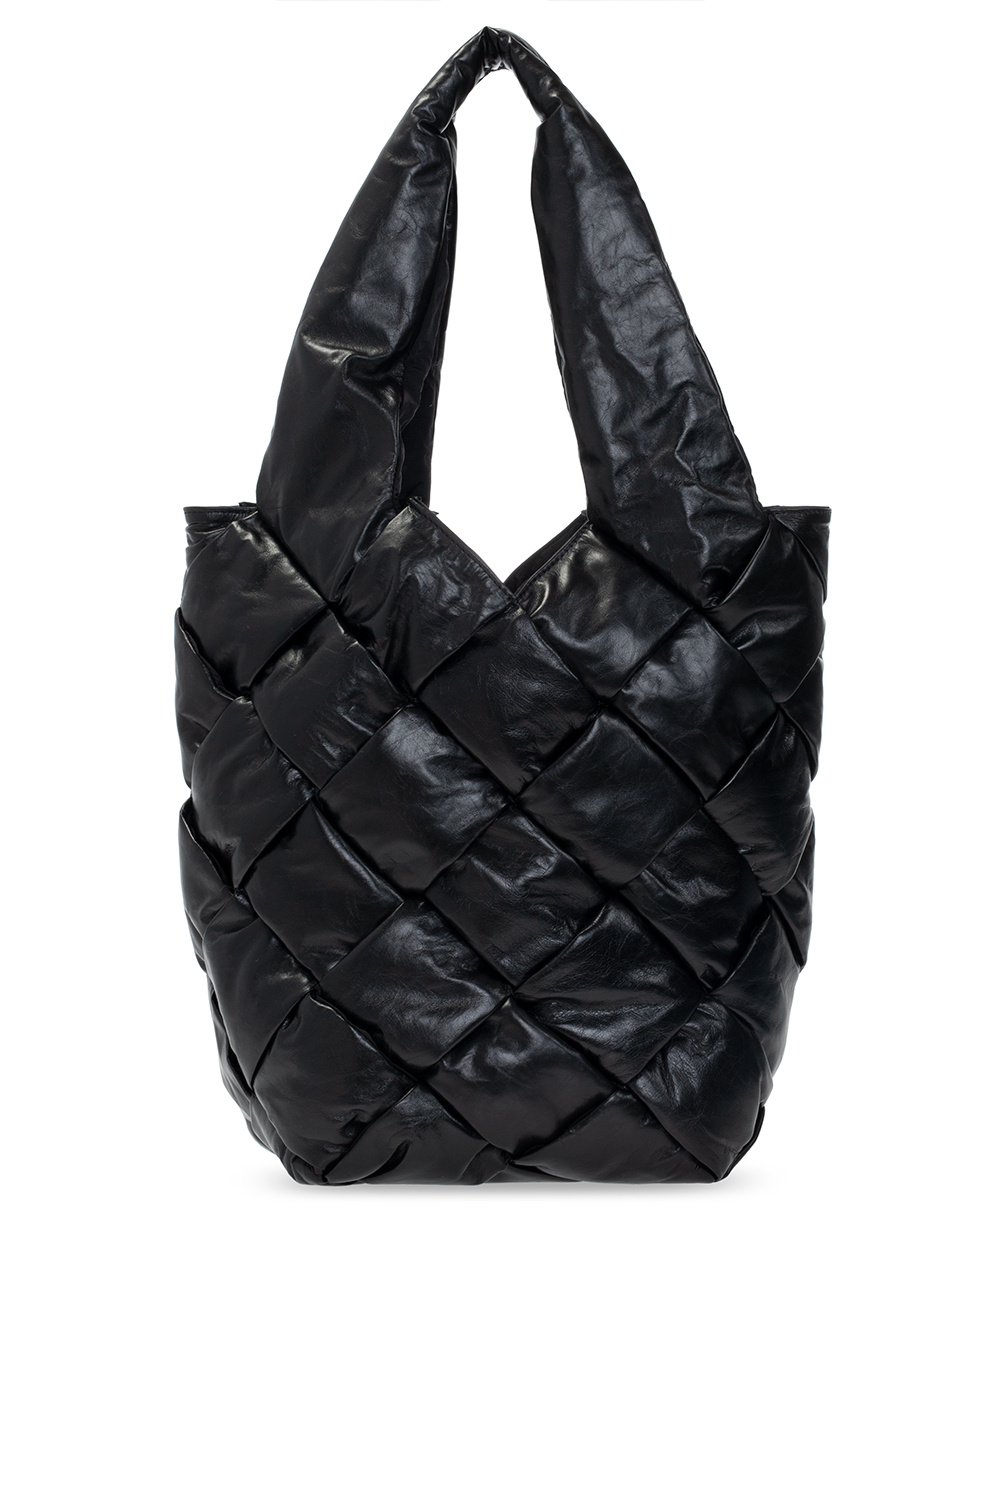 Bottega Veneta ‘Casette’ shopper bag